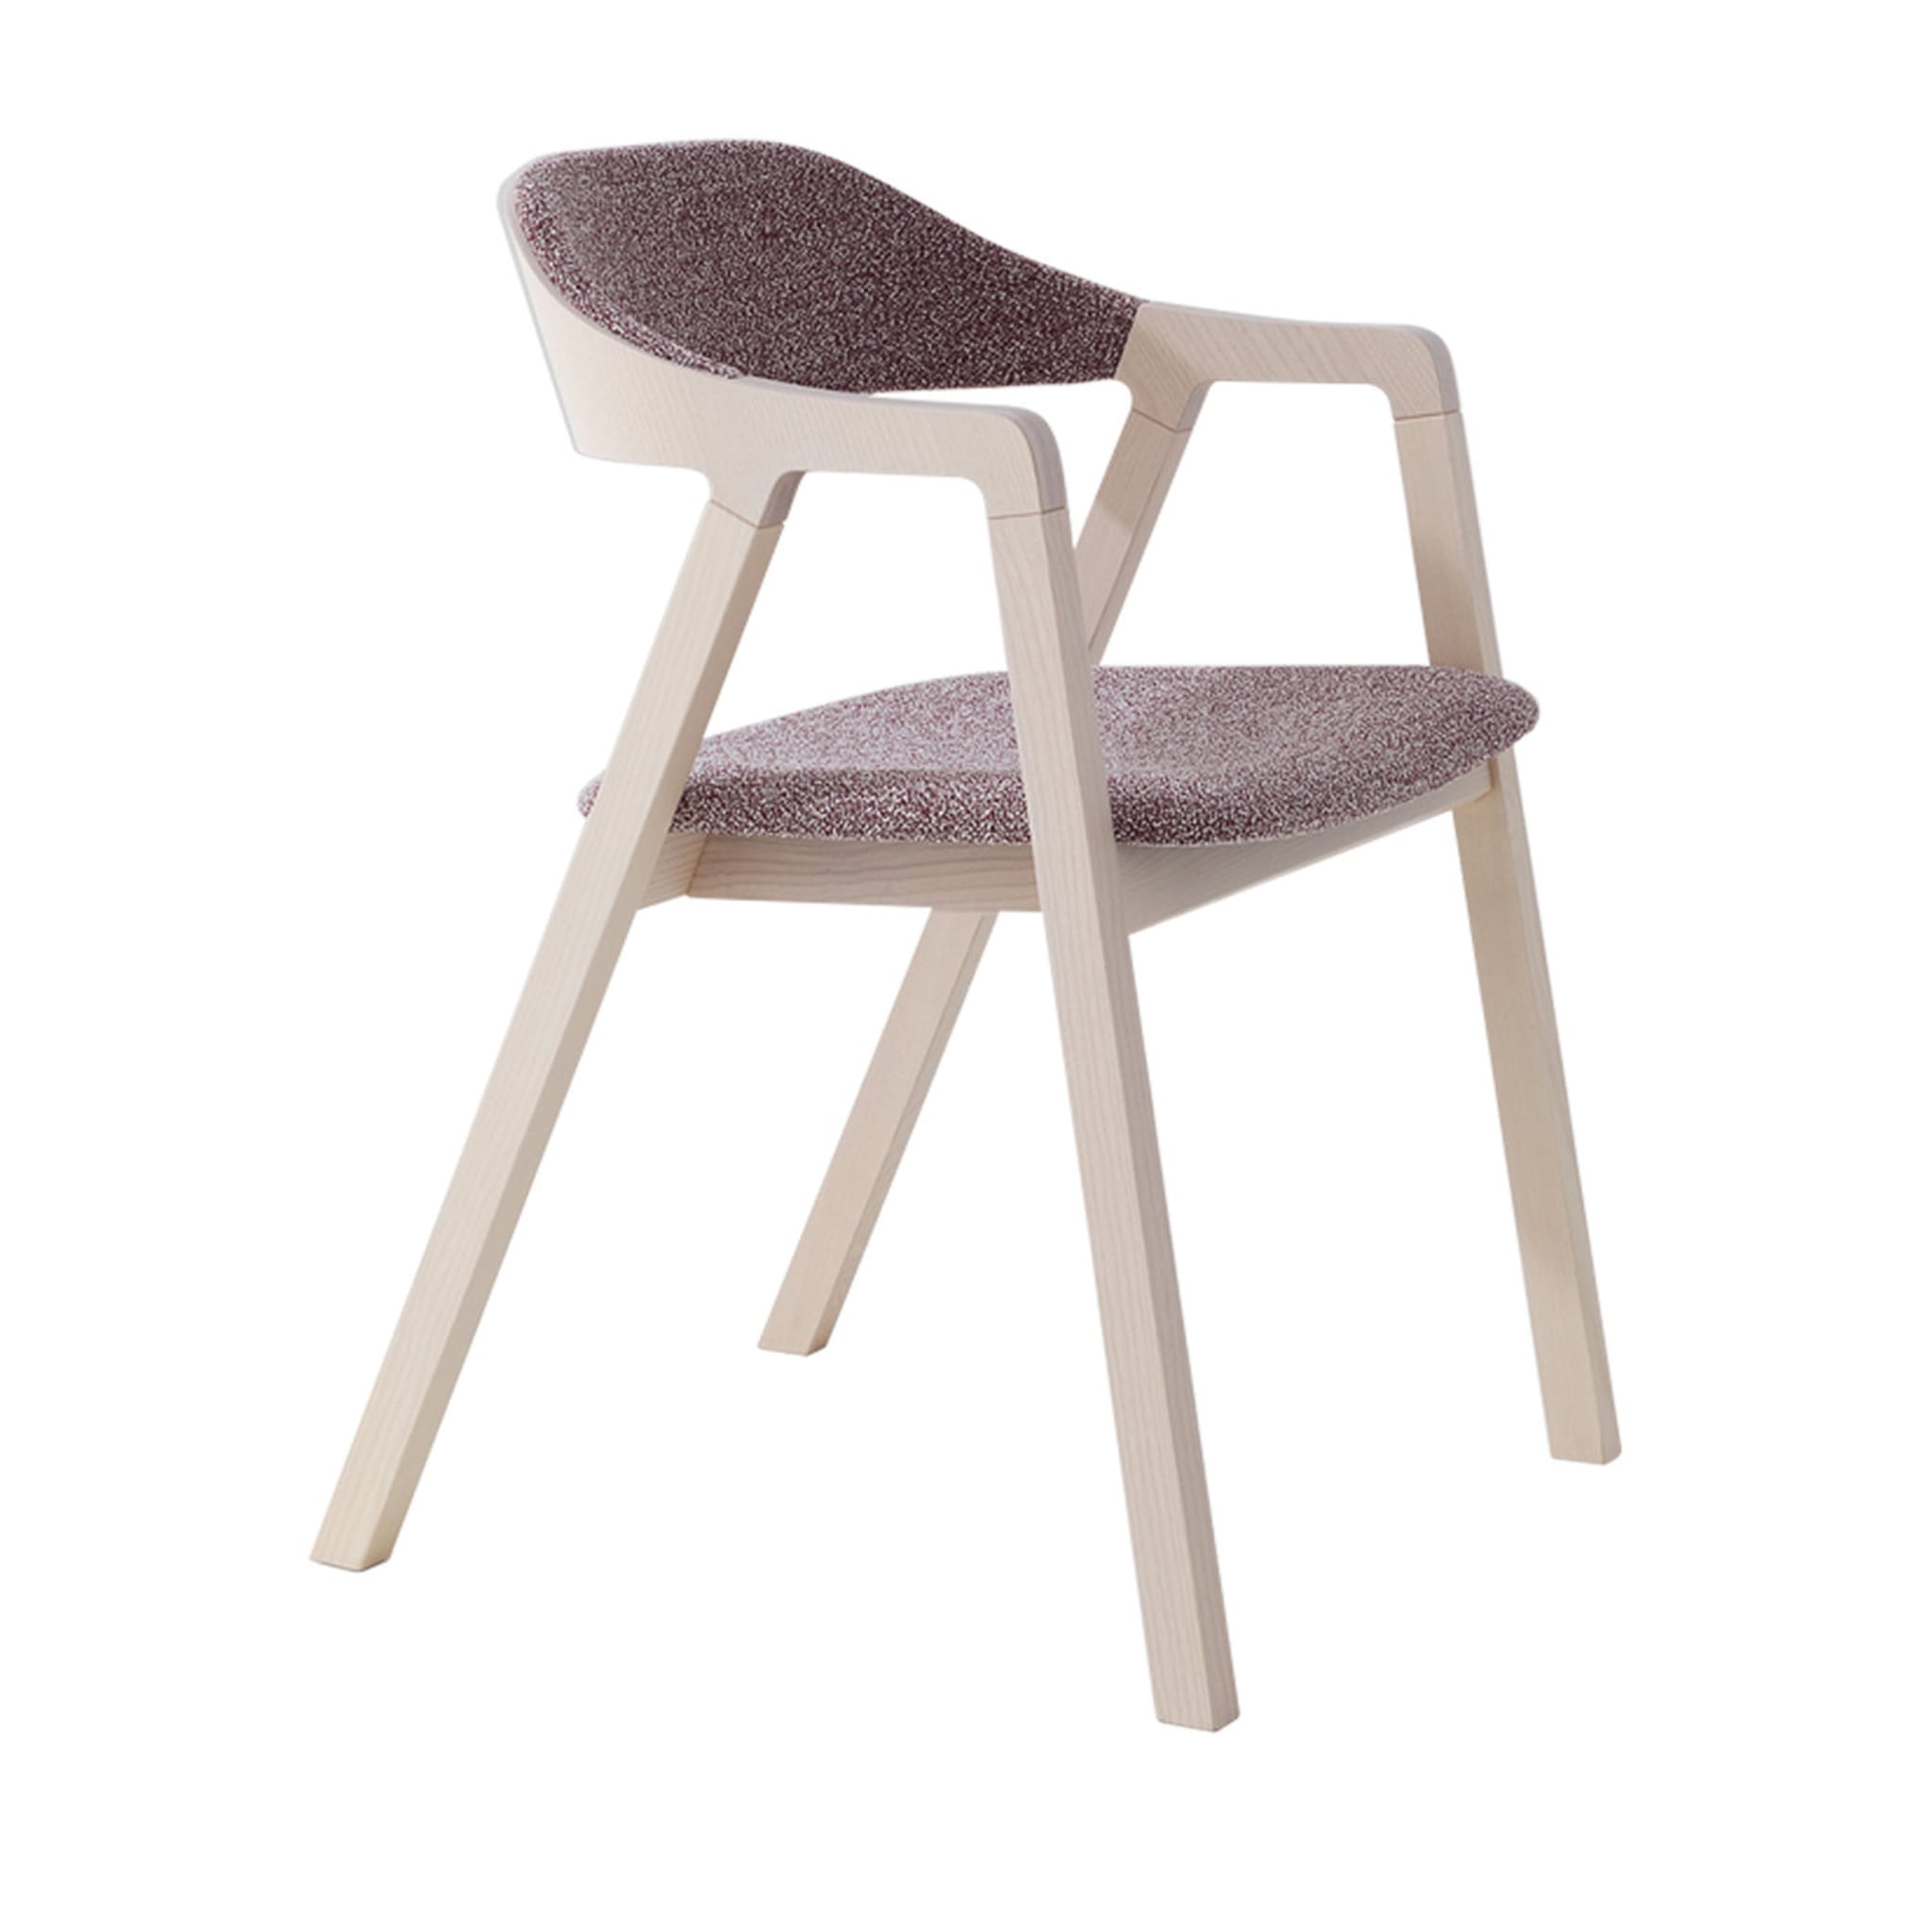 Layer 090 Chair by Michael Geldmacher - Main view